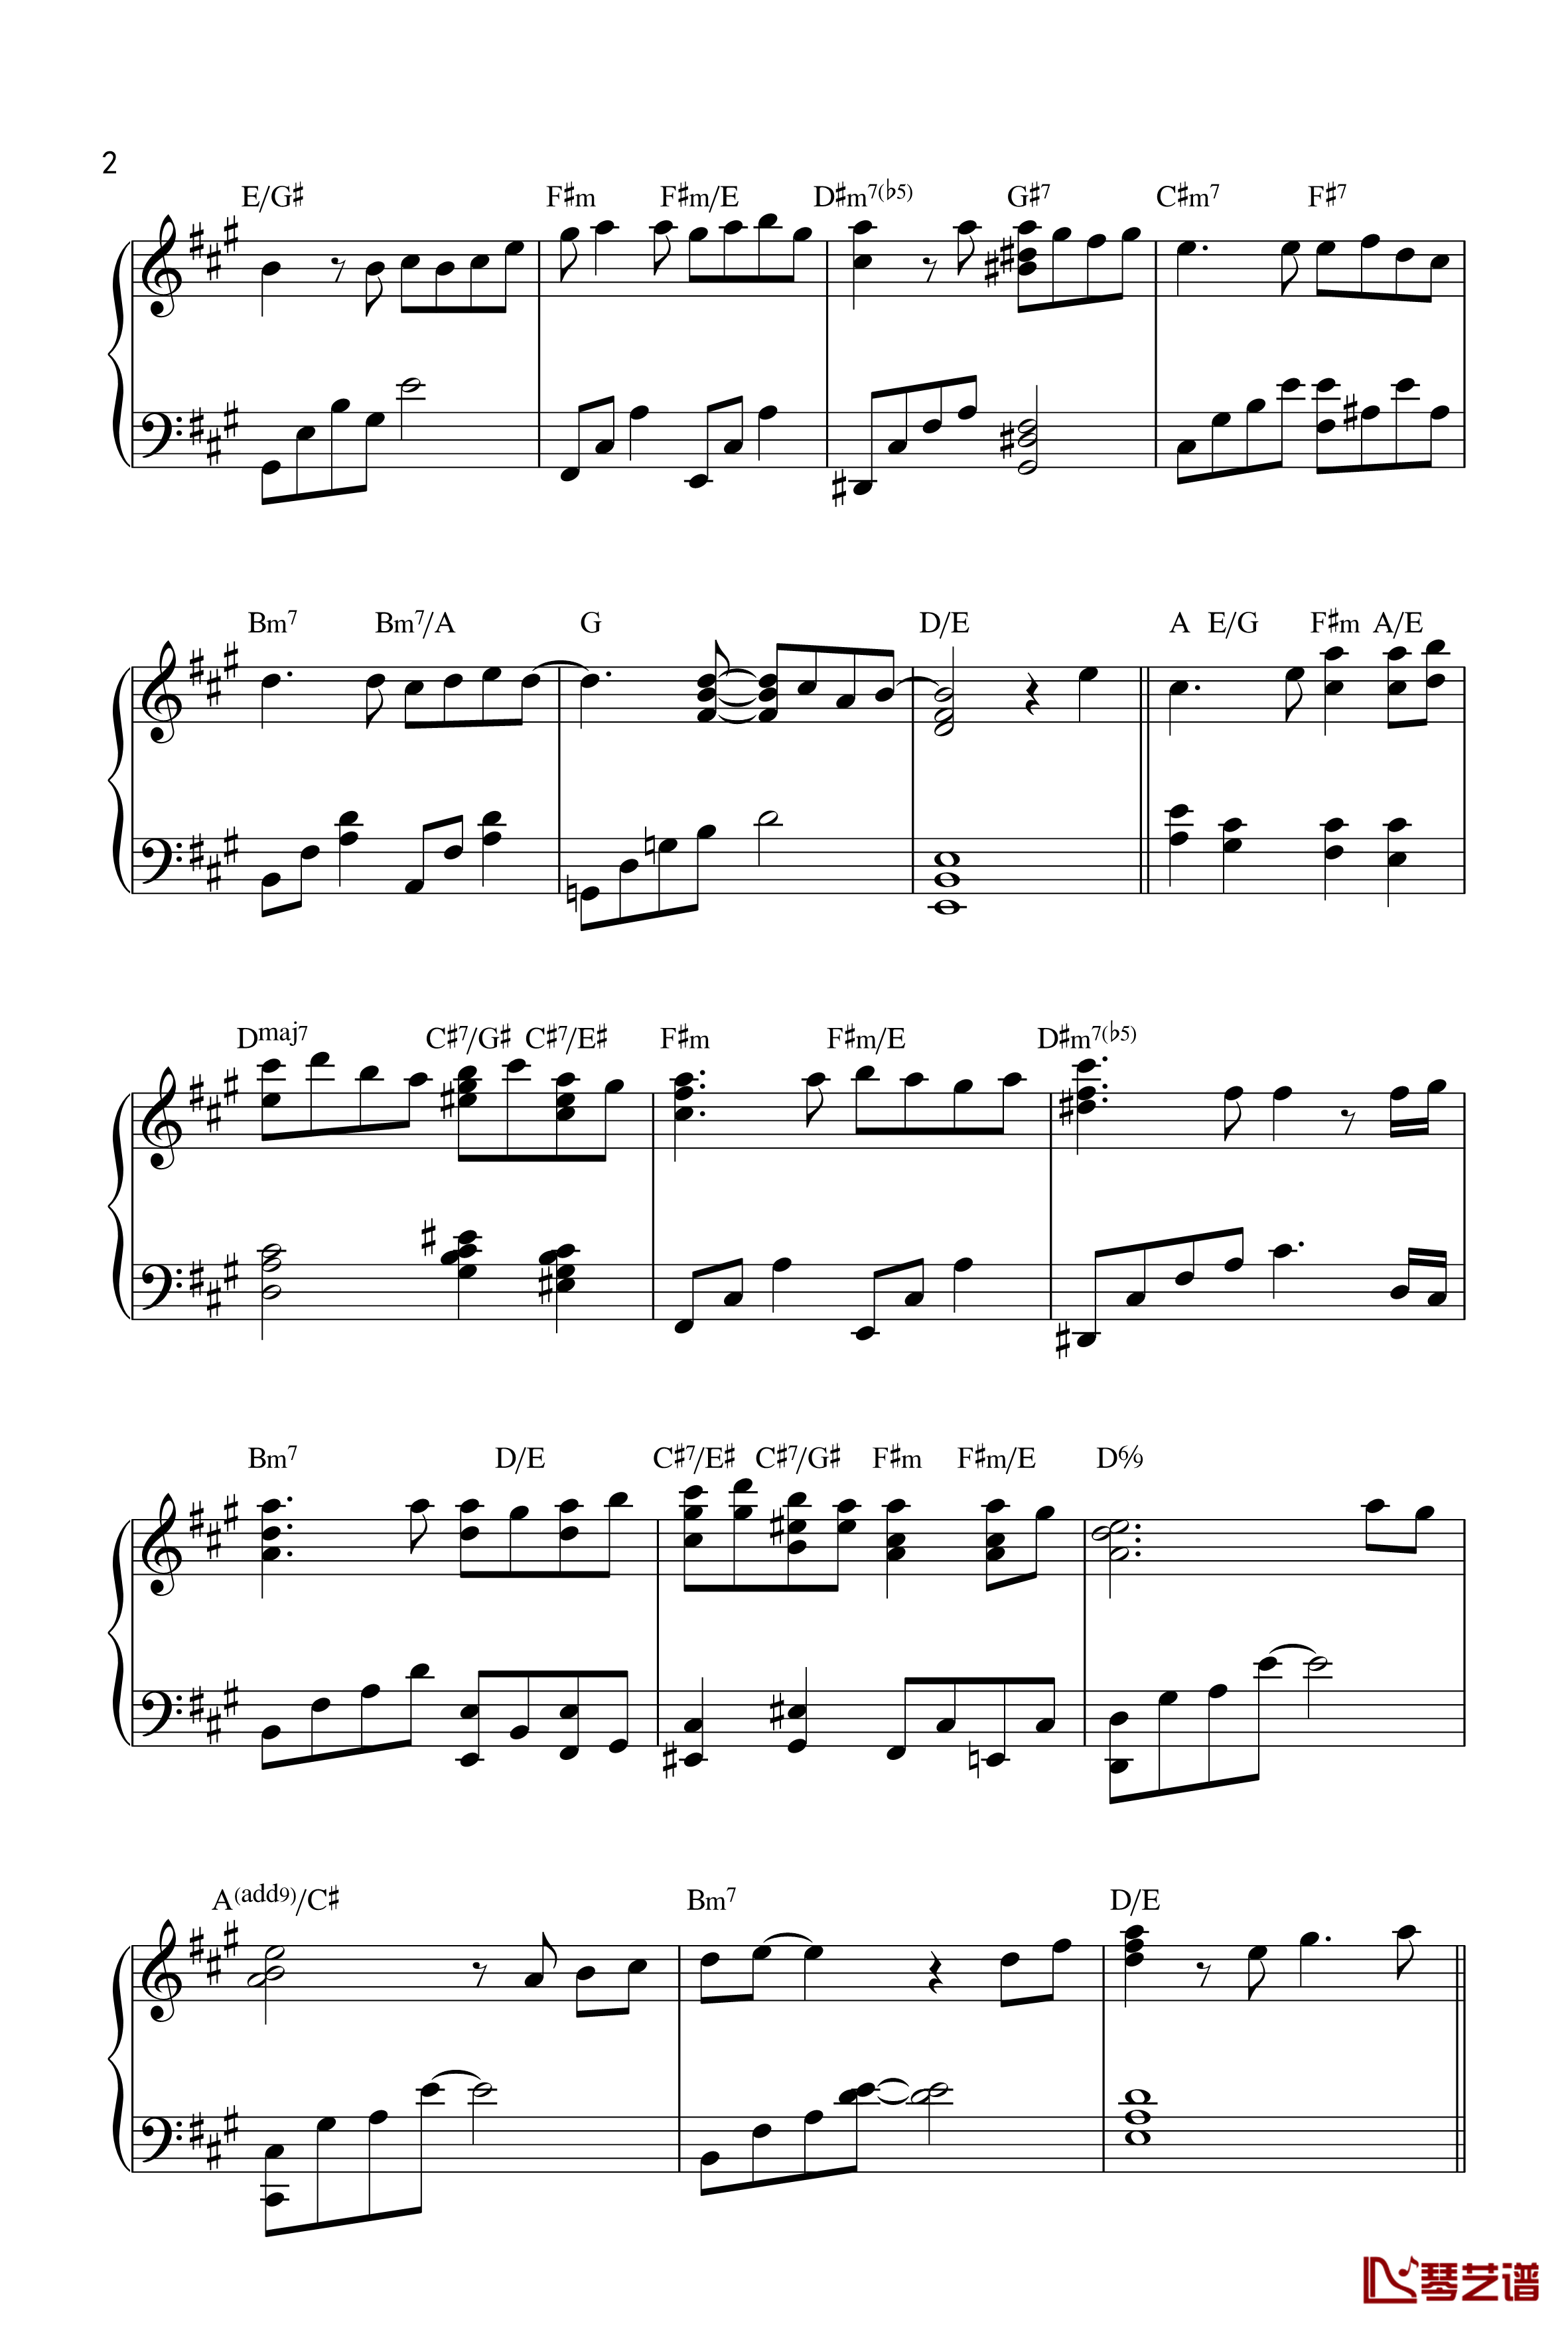 明日手纸钢琴谱-手嶌葵2